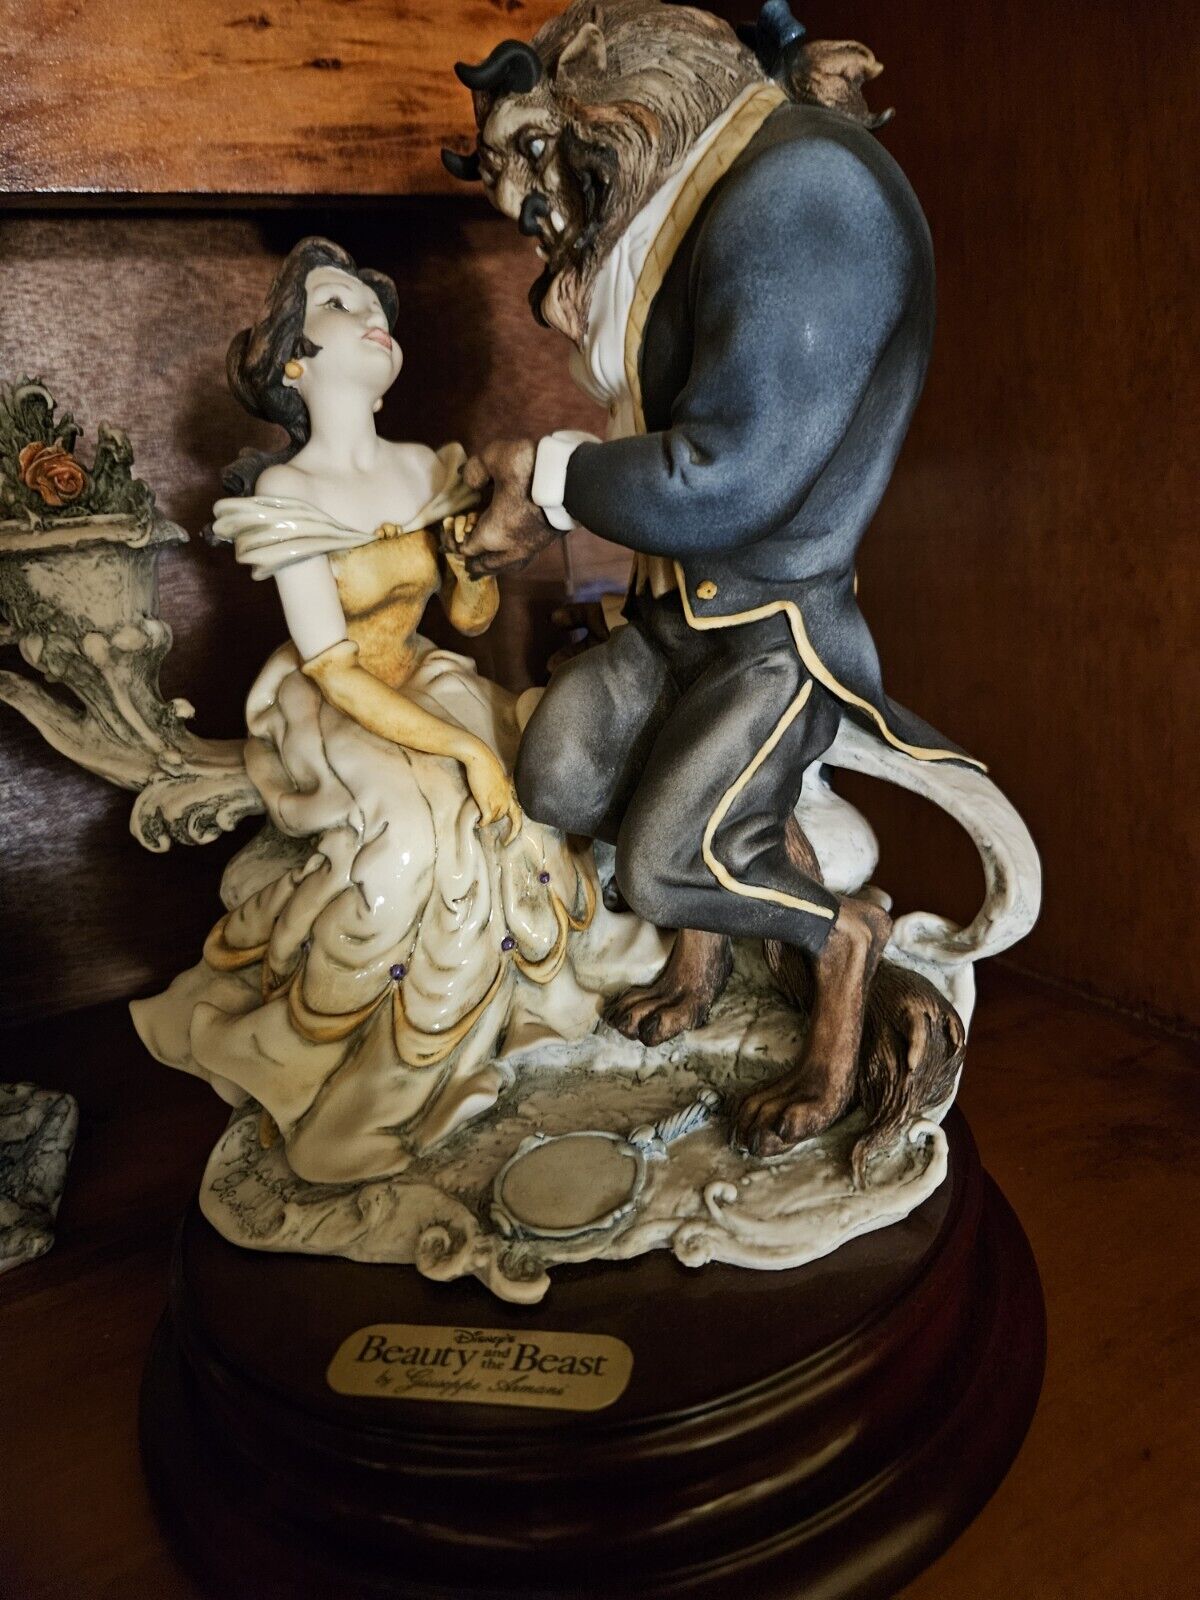 Giuseppe Armani Beauty And The Beast Figurine